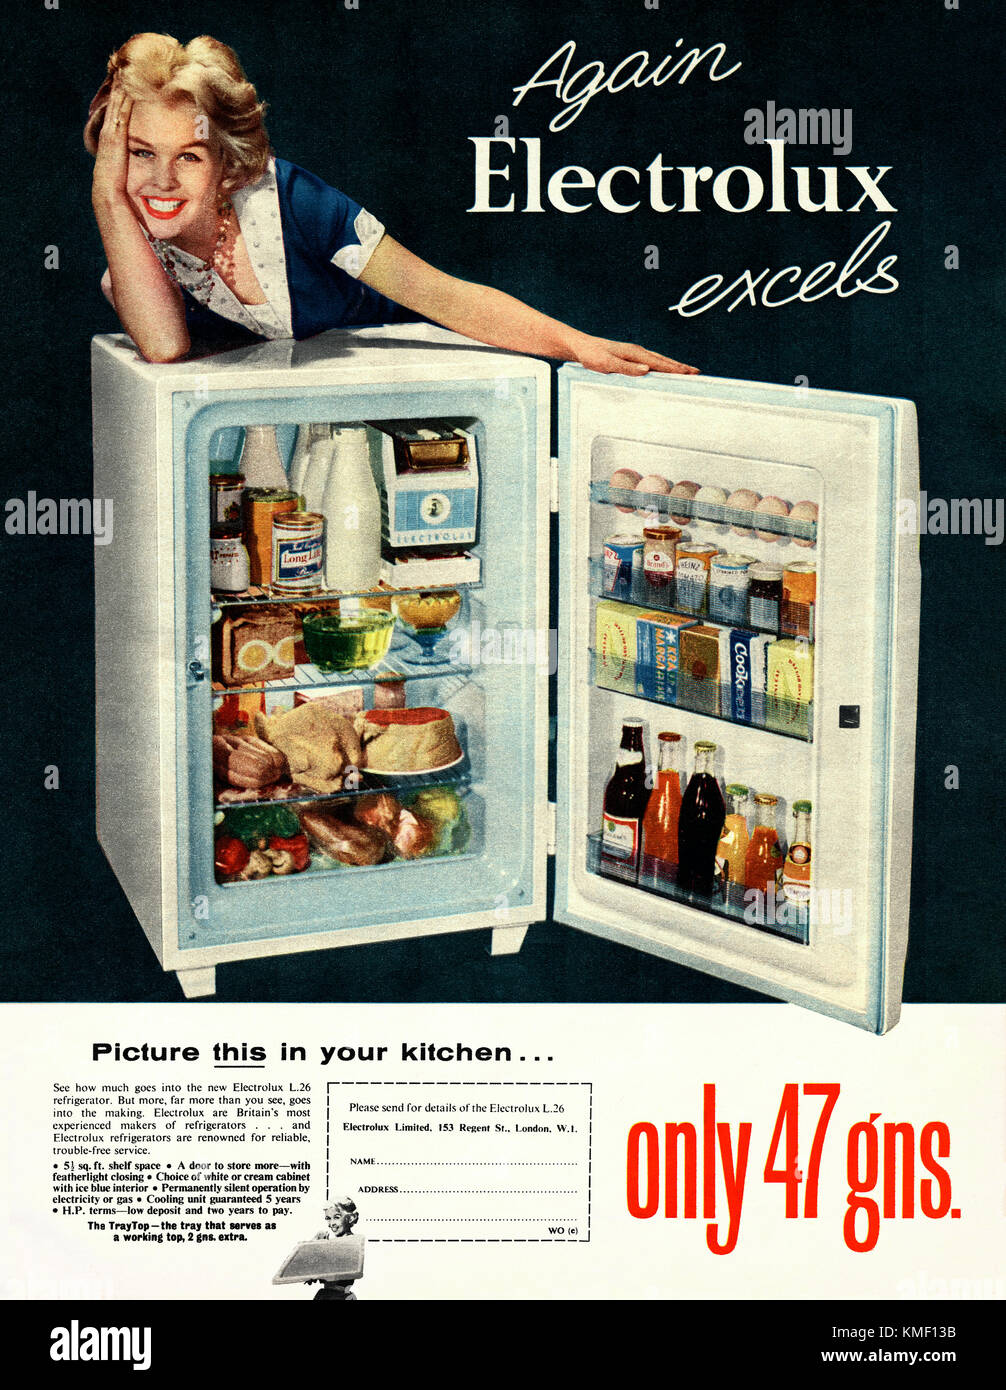 Ancienne publicité pour un réfrigérateur Electrolux. Il est apparu dans un  magazine publié au Royaume-Uni en 1959. La photographie dispose d'une  épouse et d'un réfrigérateur bien rempli. Electrolux AB est une  multinationale